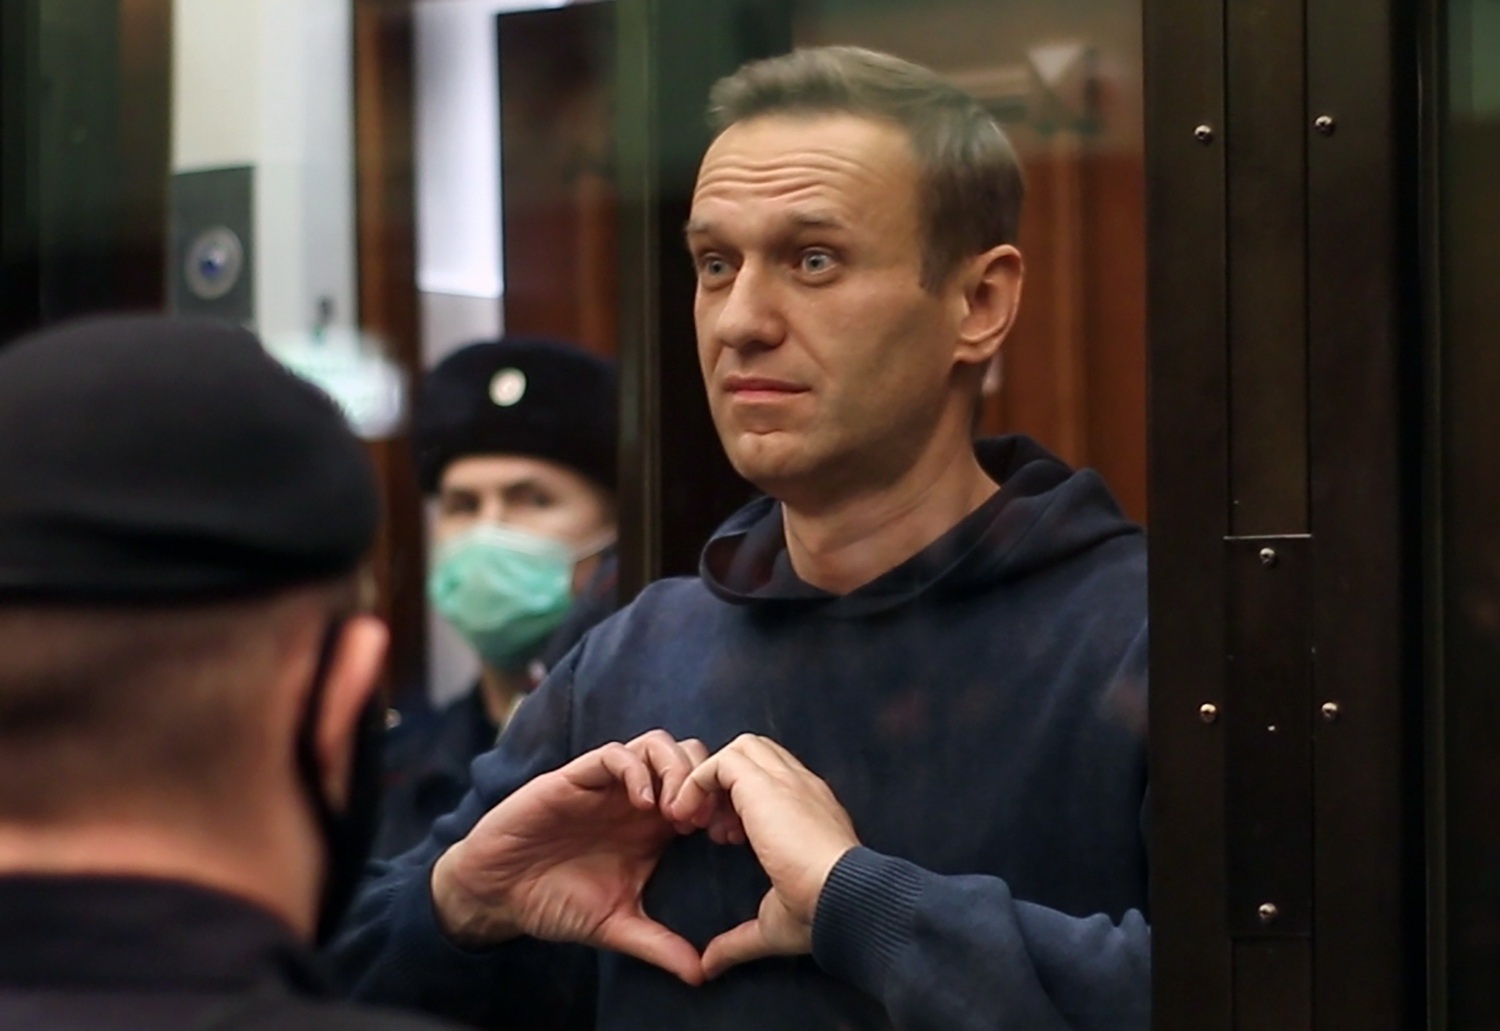 «Нет механизмов силового принуждения к исполнению решений международного суда». Юристы о требовании ЕСПЧ освободить Навального.